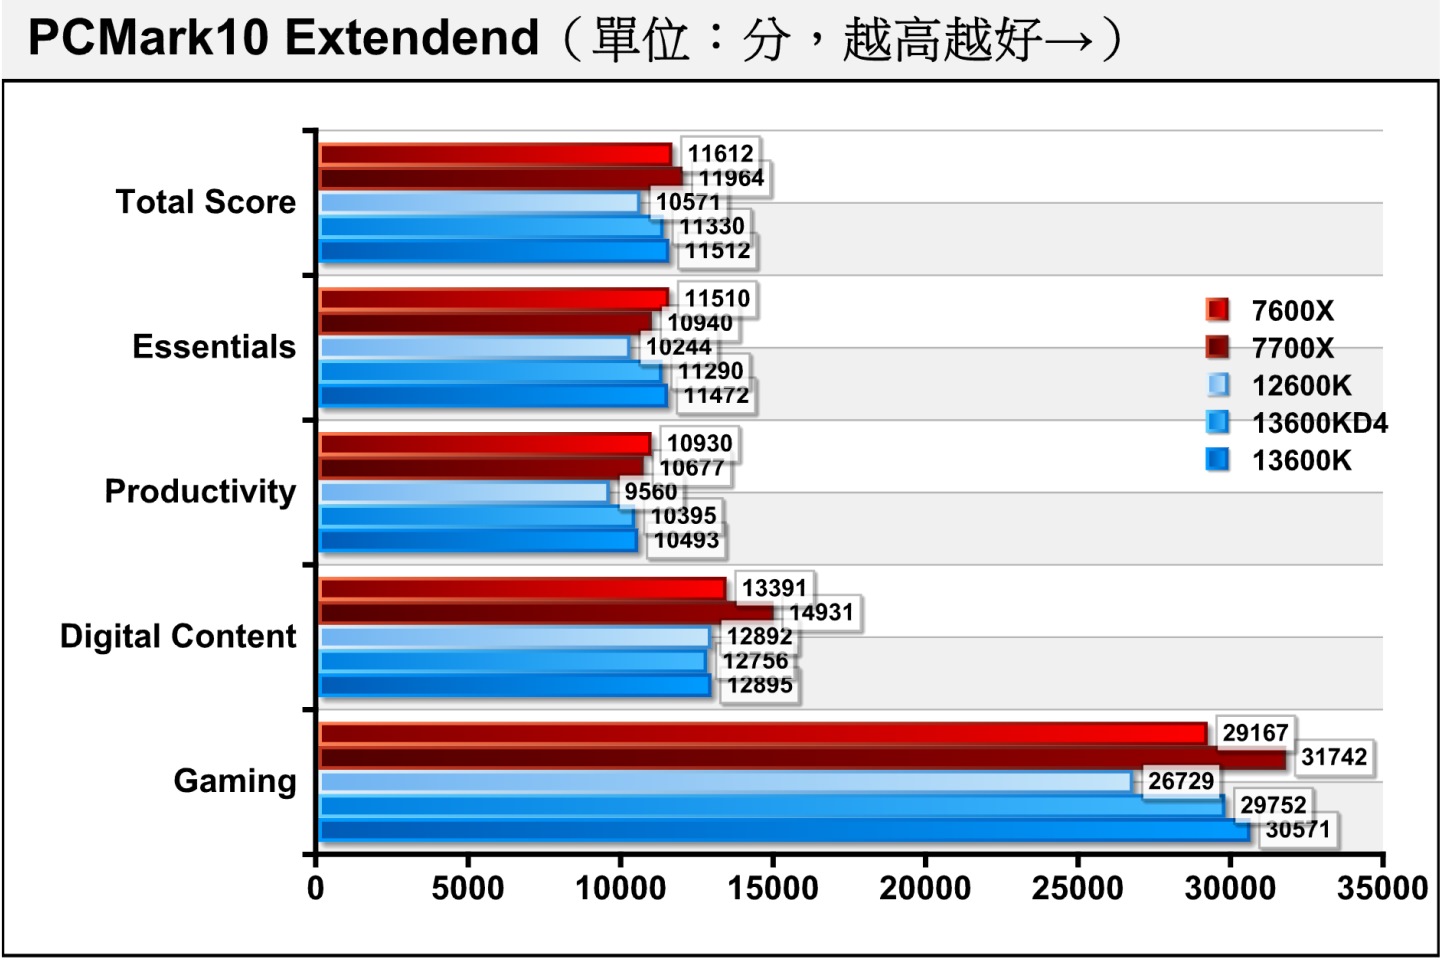 在綜合效能測試項目PCMark10 Extendend，Core i5-13600K使用DDR4、DDR5記憶體的各項目效能大約落後0.94~2.68%不，總分僅相差1.58%，差異並不是很大。